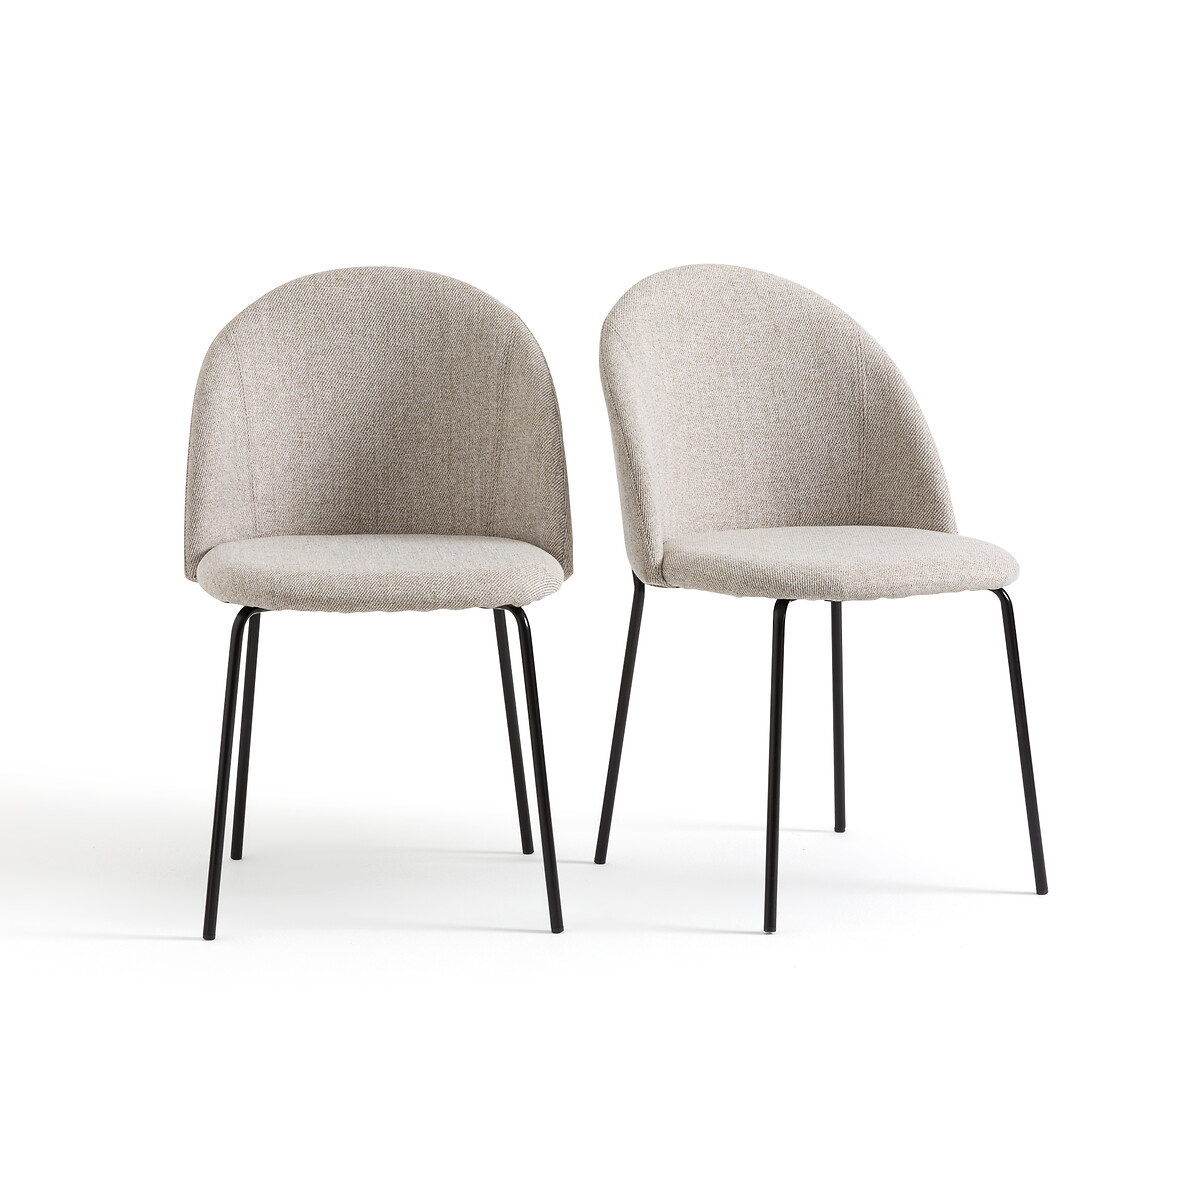 Комплект из двух стульев из ткани меланж Nordie единый размер бежевый комплект из двух стульев с перекладинами bistro единый размер каштановый